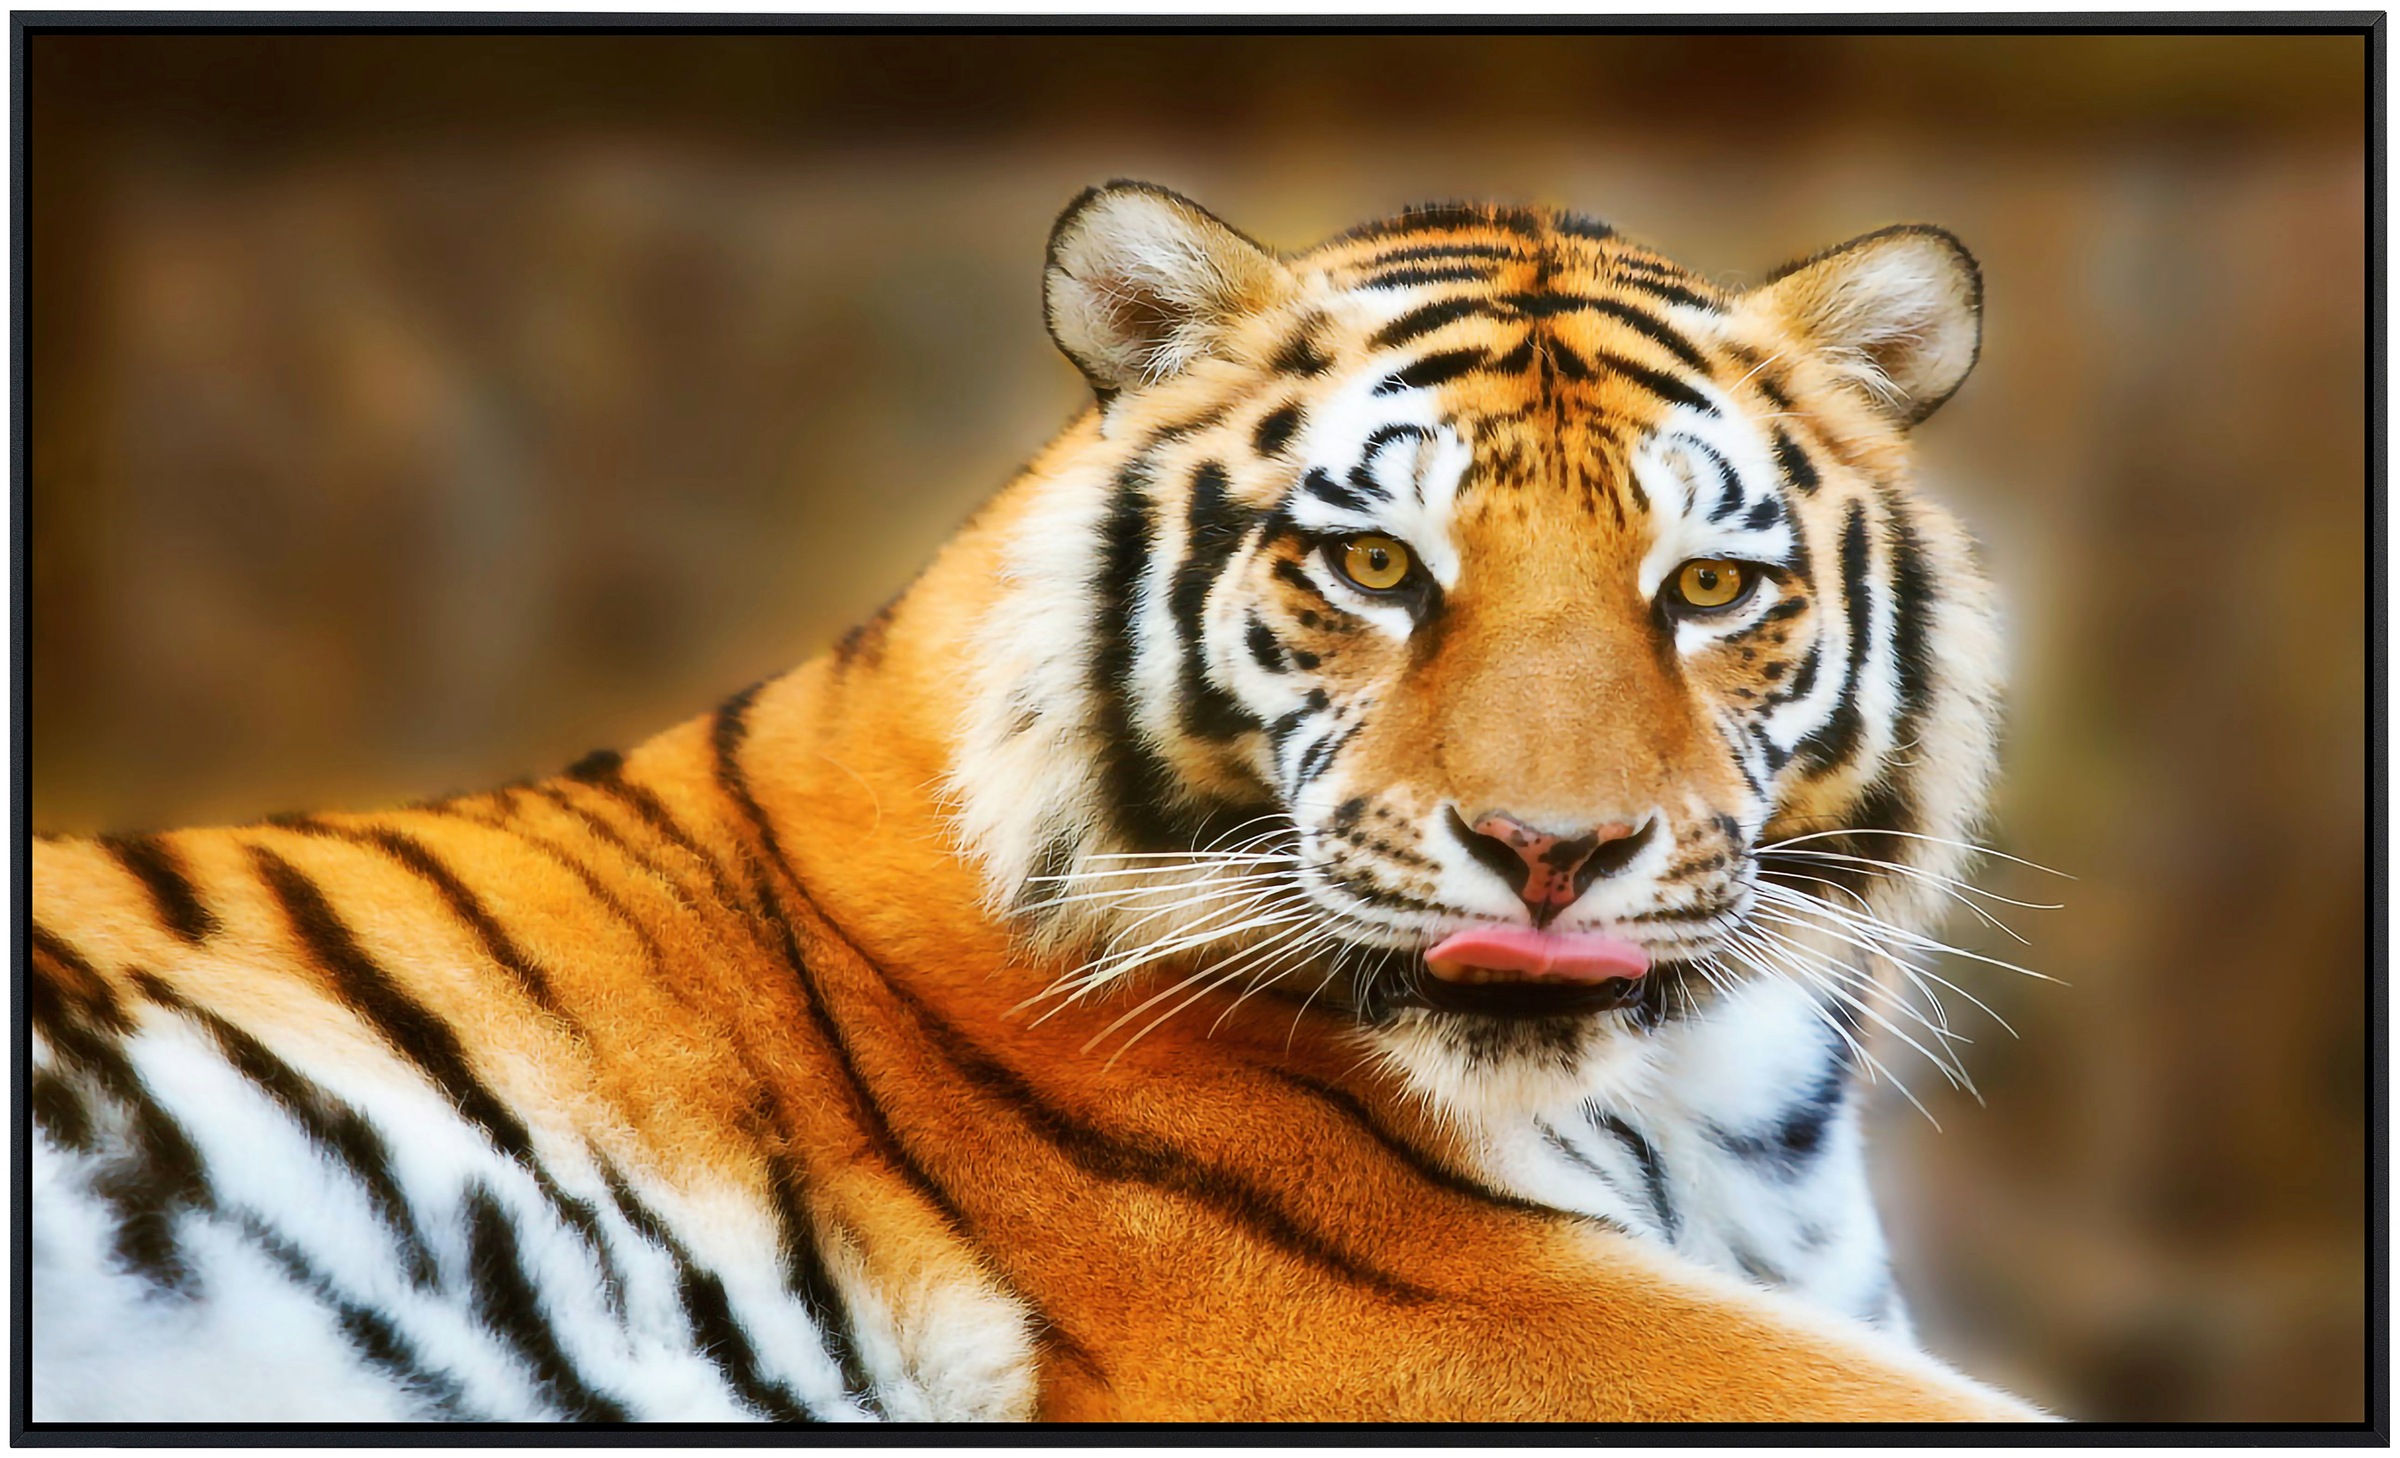 Papermoon Infrarotheizung »Ruhender Tiger«, sehr angenehme Strahlungswärme günstig online kaufen